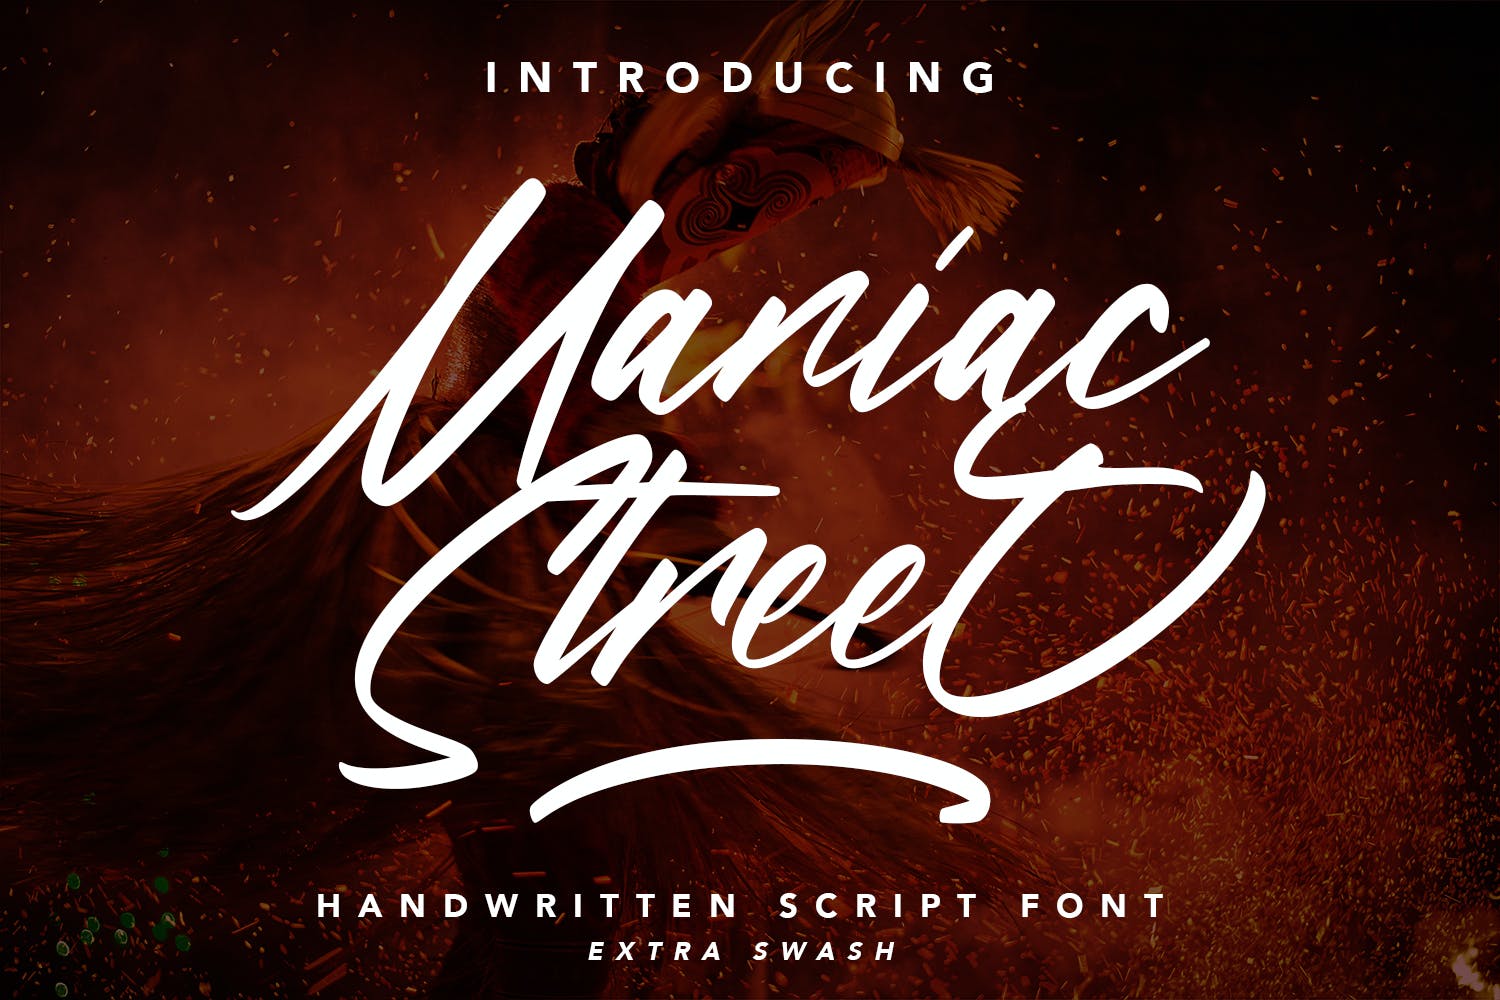 印刷设计适用手写英文脚本字体 ManiacStreet – Handwritten Script Font 设计素材 第1张